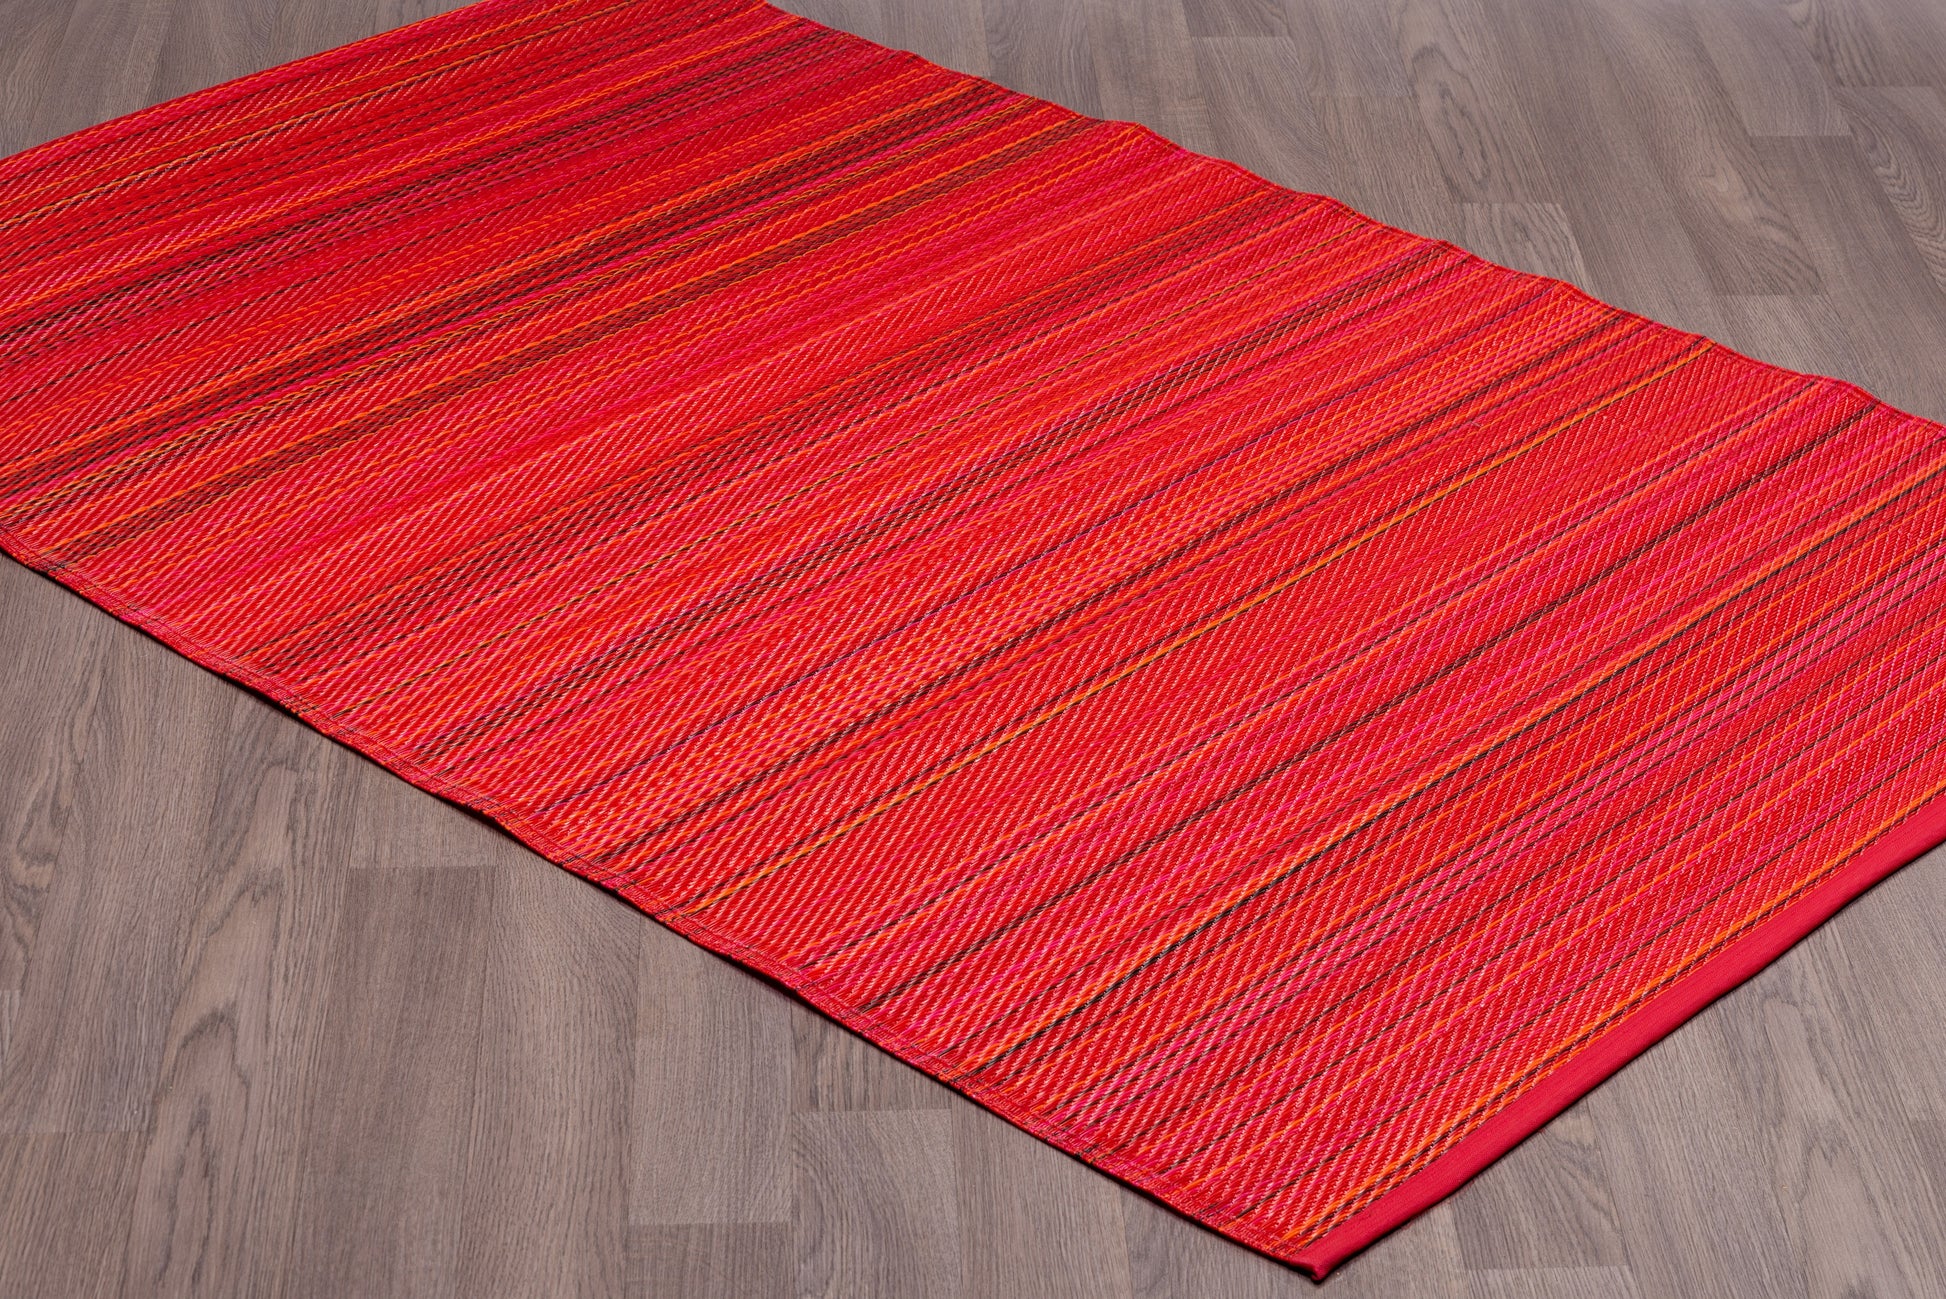 Indoor/Outdoor red Stripes Reversible Rug Outdoor Area Rug, Outdoor carpet, outdoor mat, picnic mat